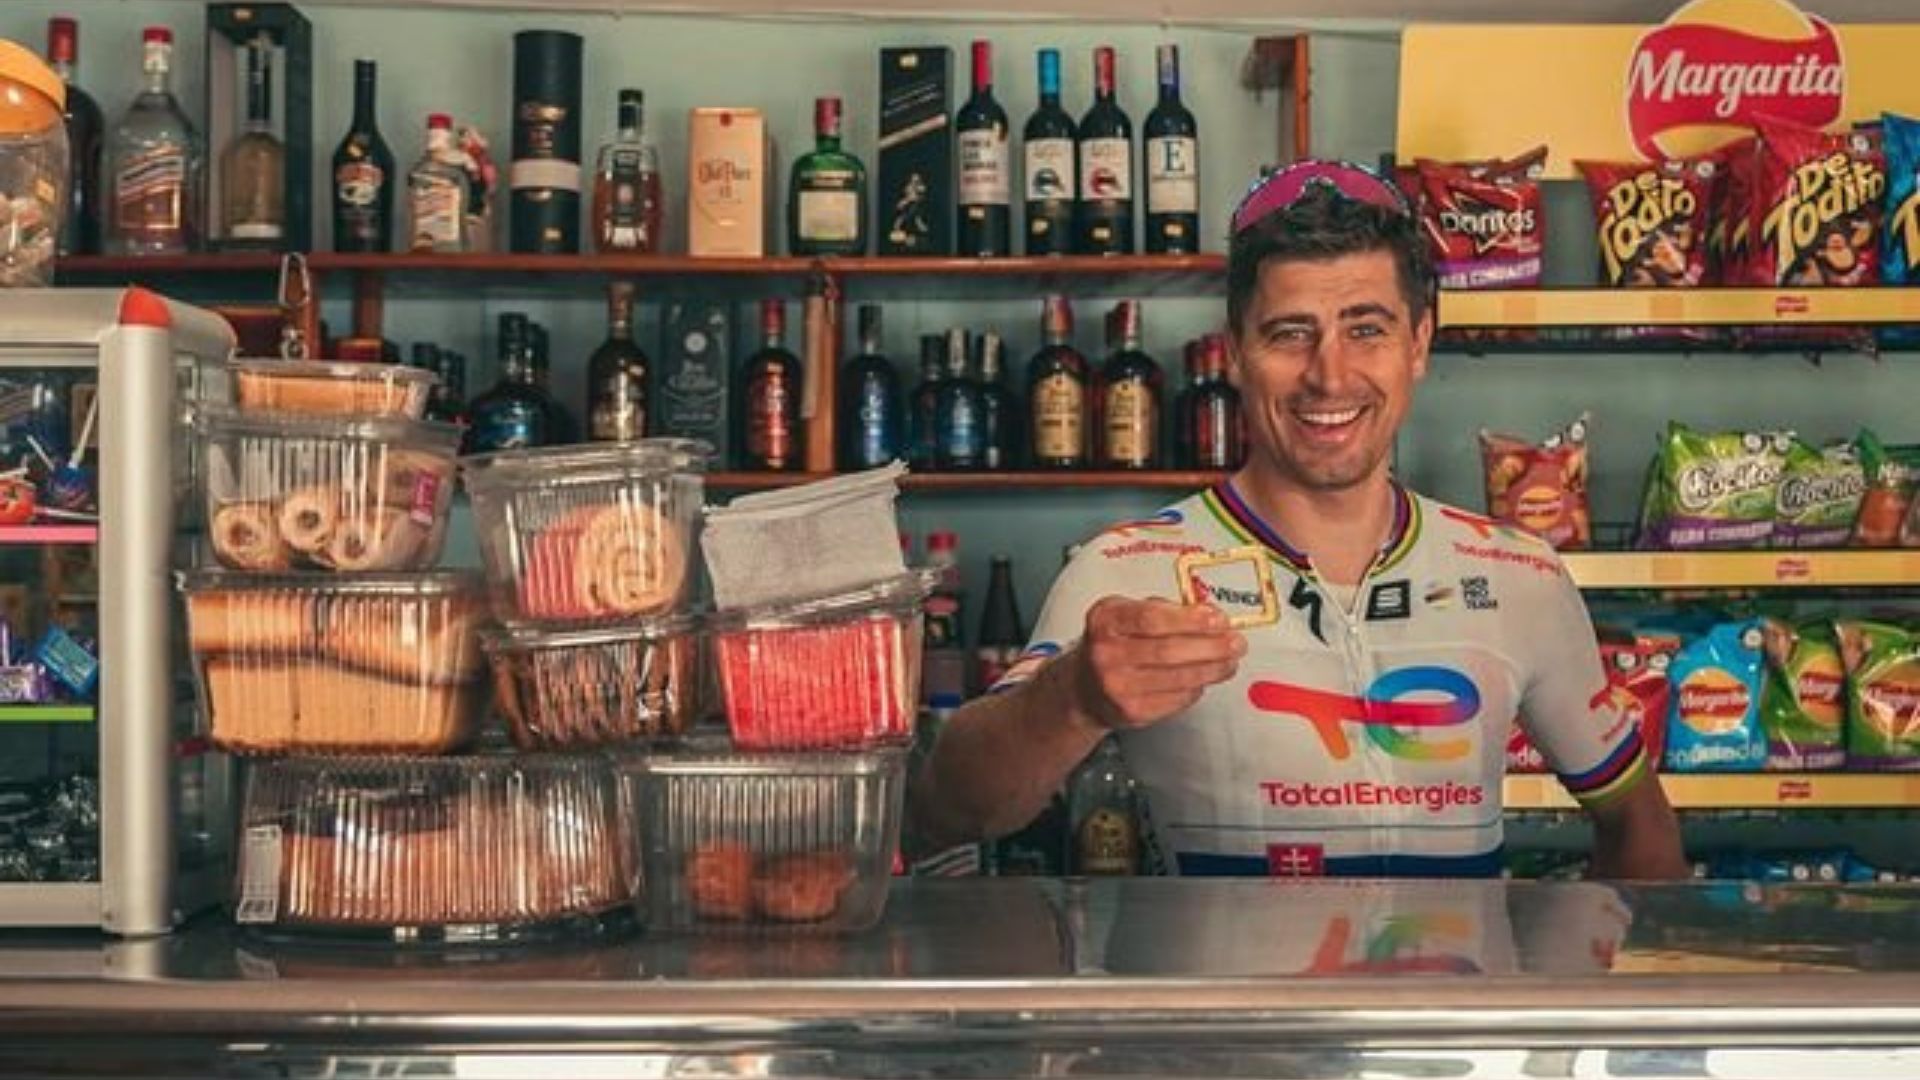 El ciclista Peter Sagan, tres veces campeón del mundo,  entrena en Medellín: “¿Cómo no enamorarse de este lugar?”